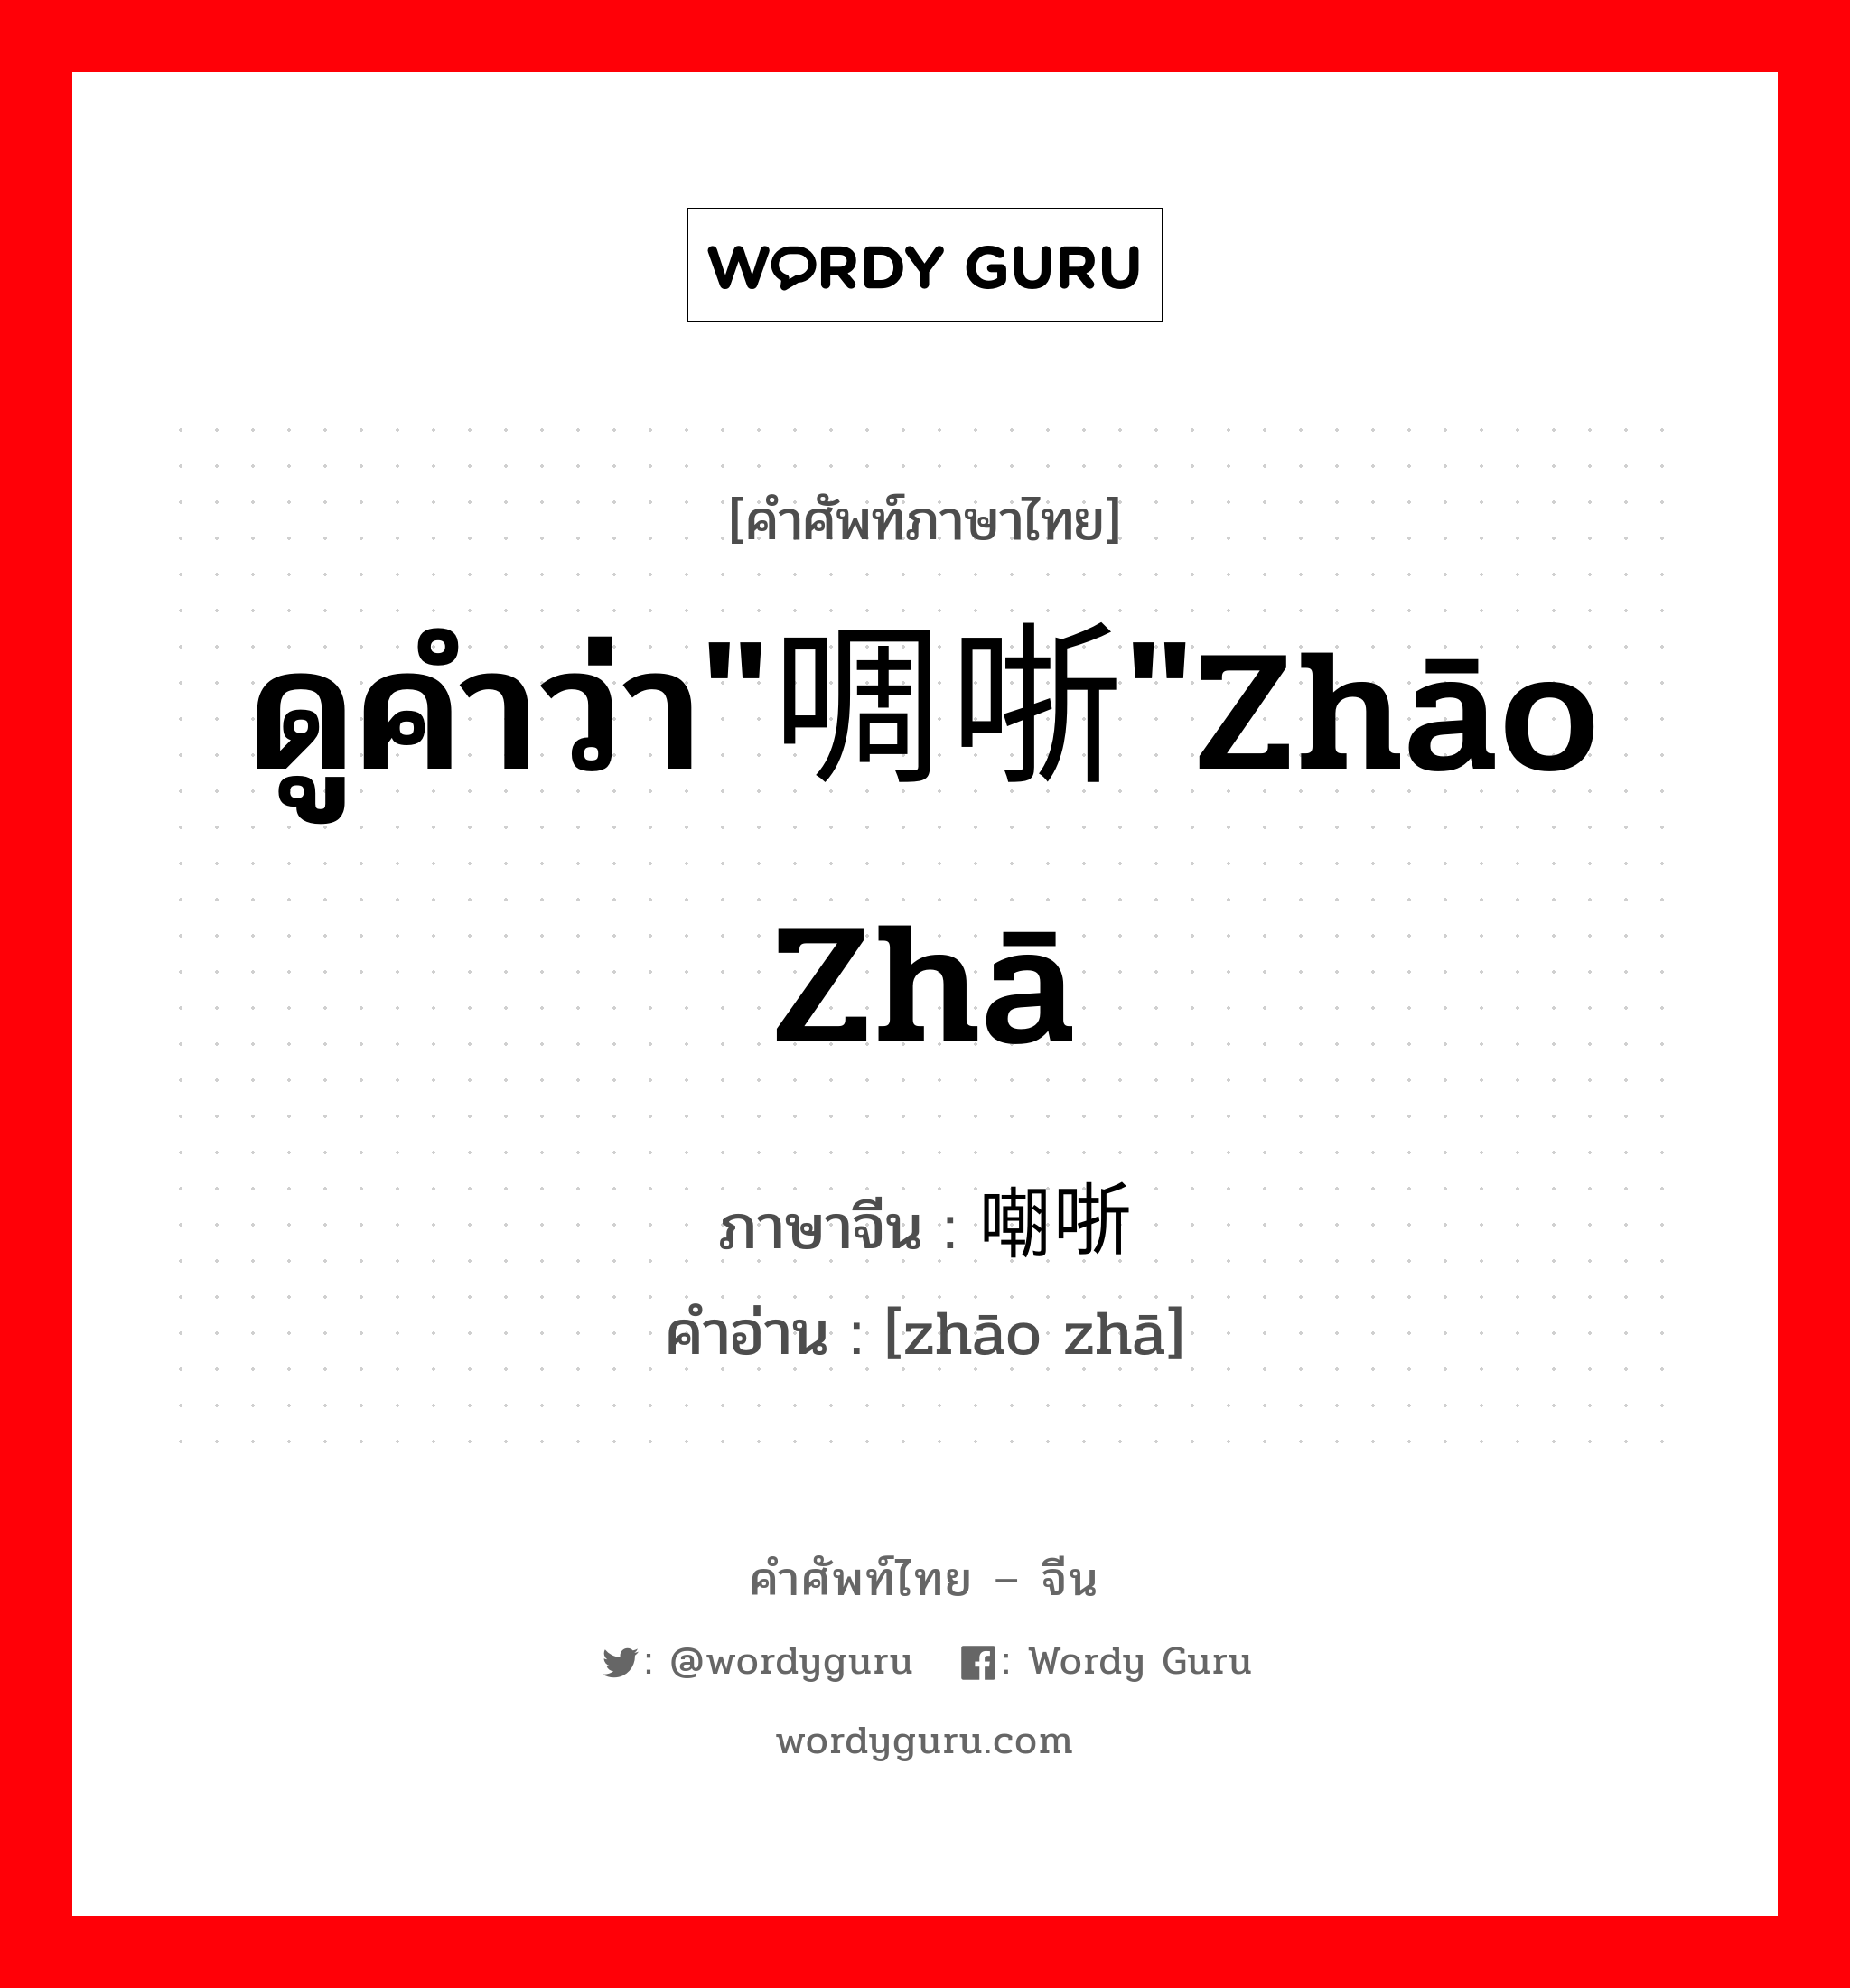 ดูคำว่า"啁哳"zhāo zhā ภาษาจีนคืออะไร, คำศัพท์ภาษาไทย - จีน ดูคำว่า"啁哳"zhāo zhā ภาษาจีน 嘲哳 คำอ่าน [zhāo zhā]